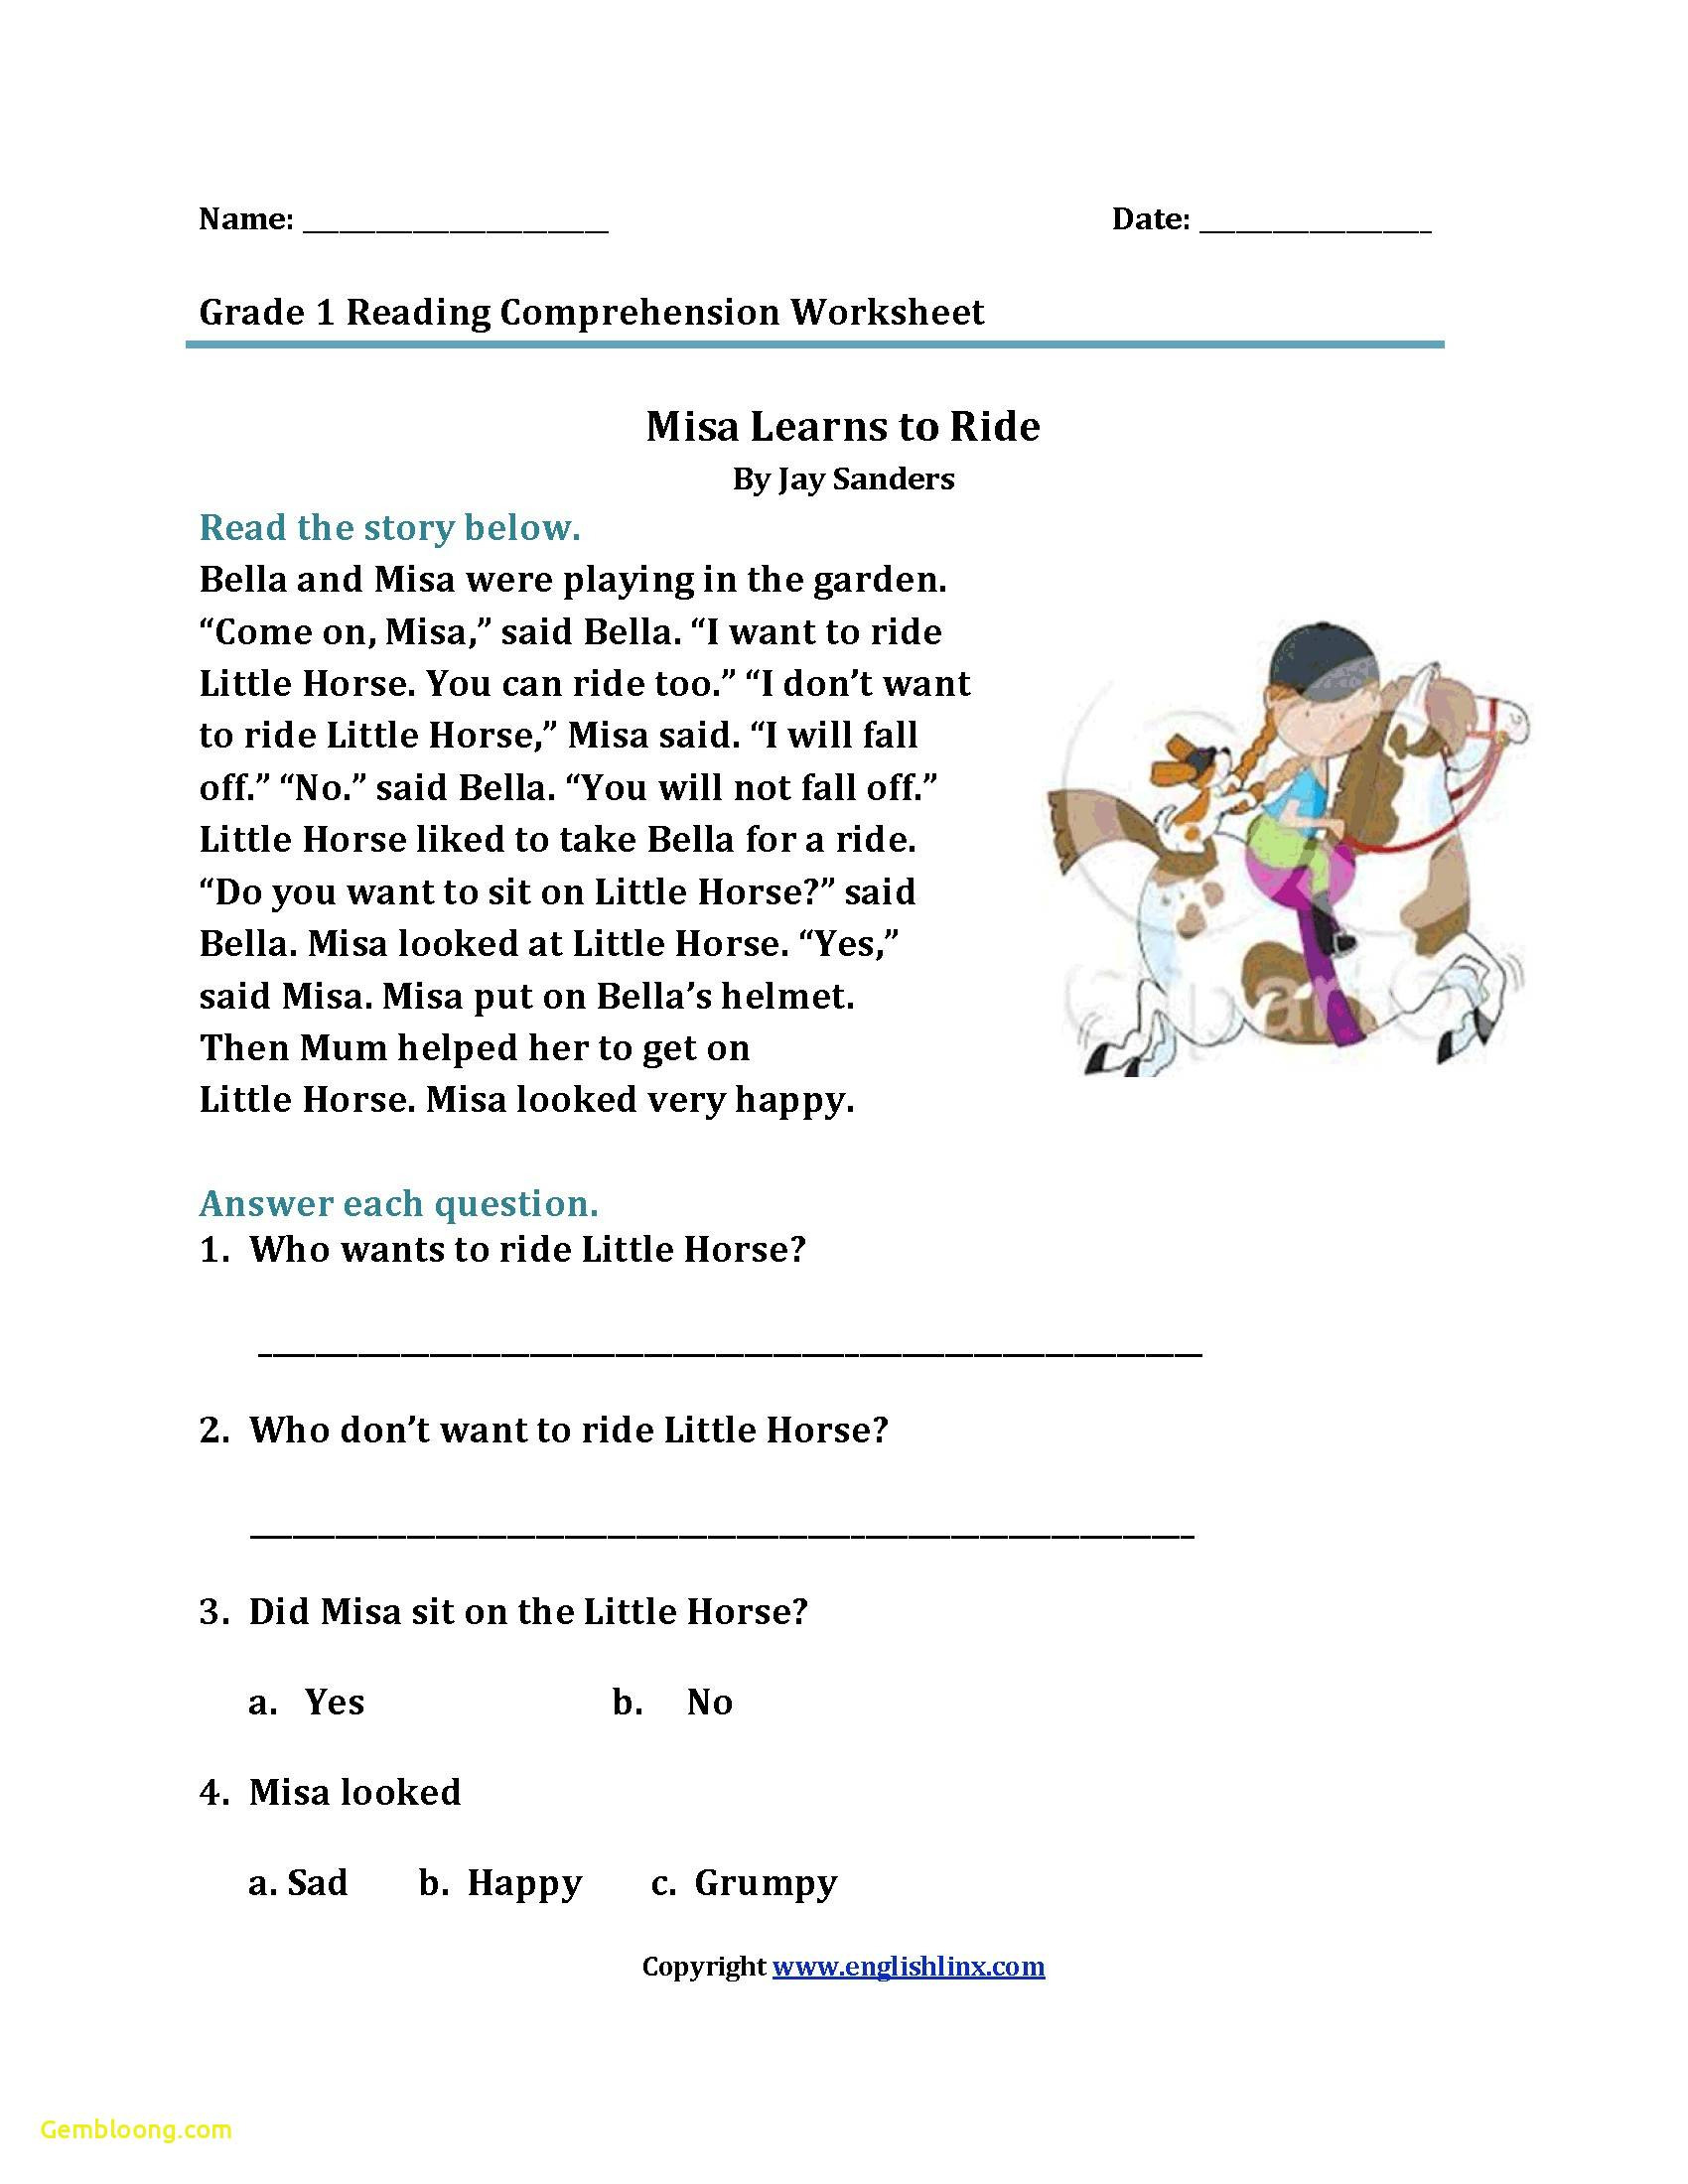 Comprehension Worksheets For Grade 1 Free | db-excel.com